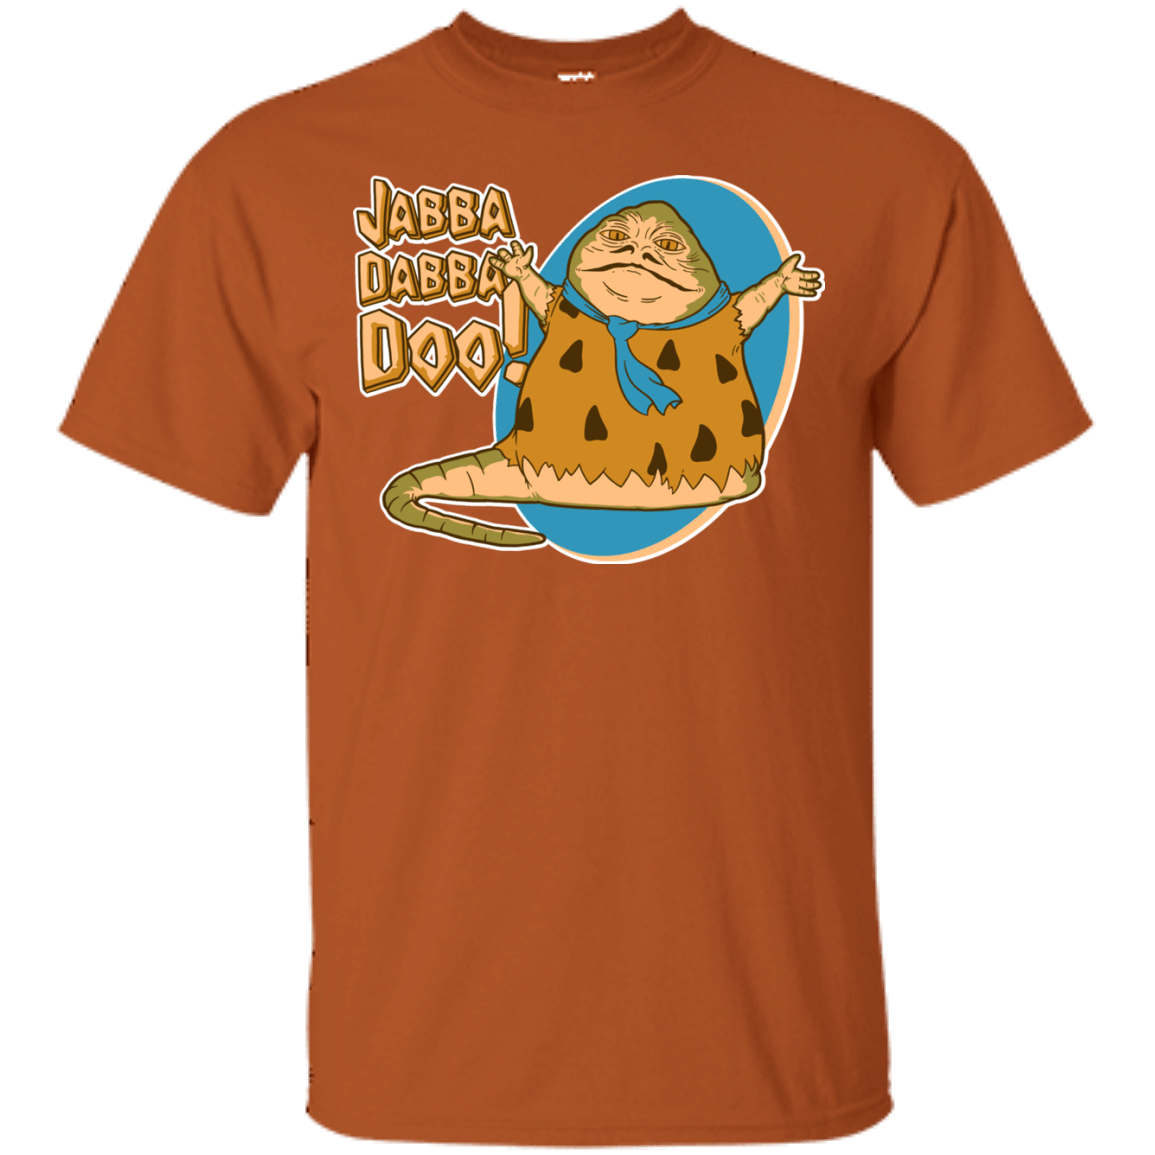 T-Shirts Texas Orange / S Jabba Dabba Doo T-Shirt